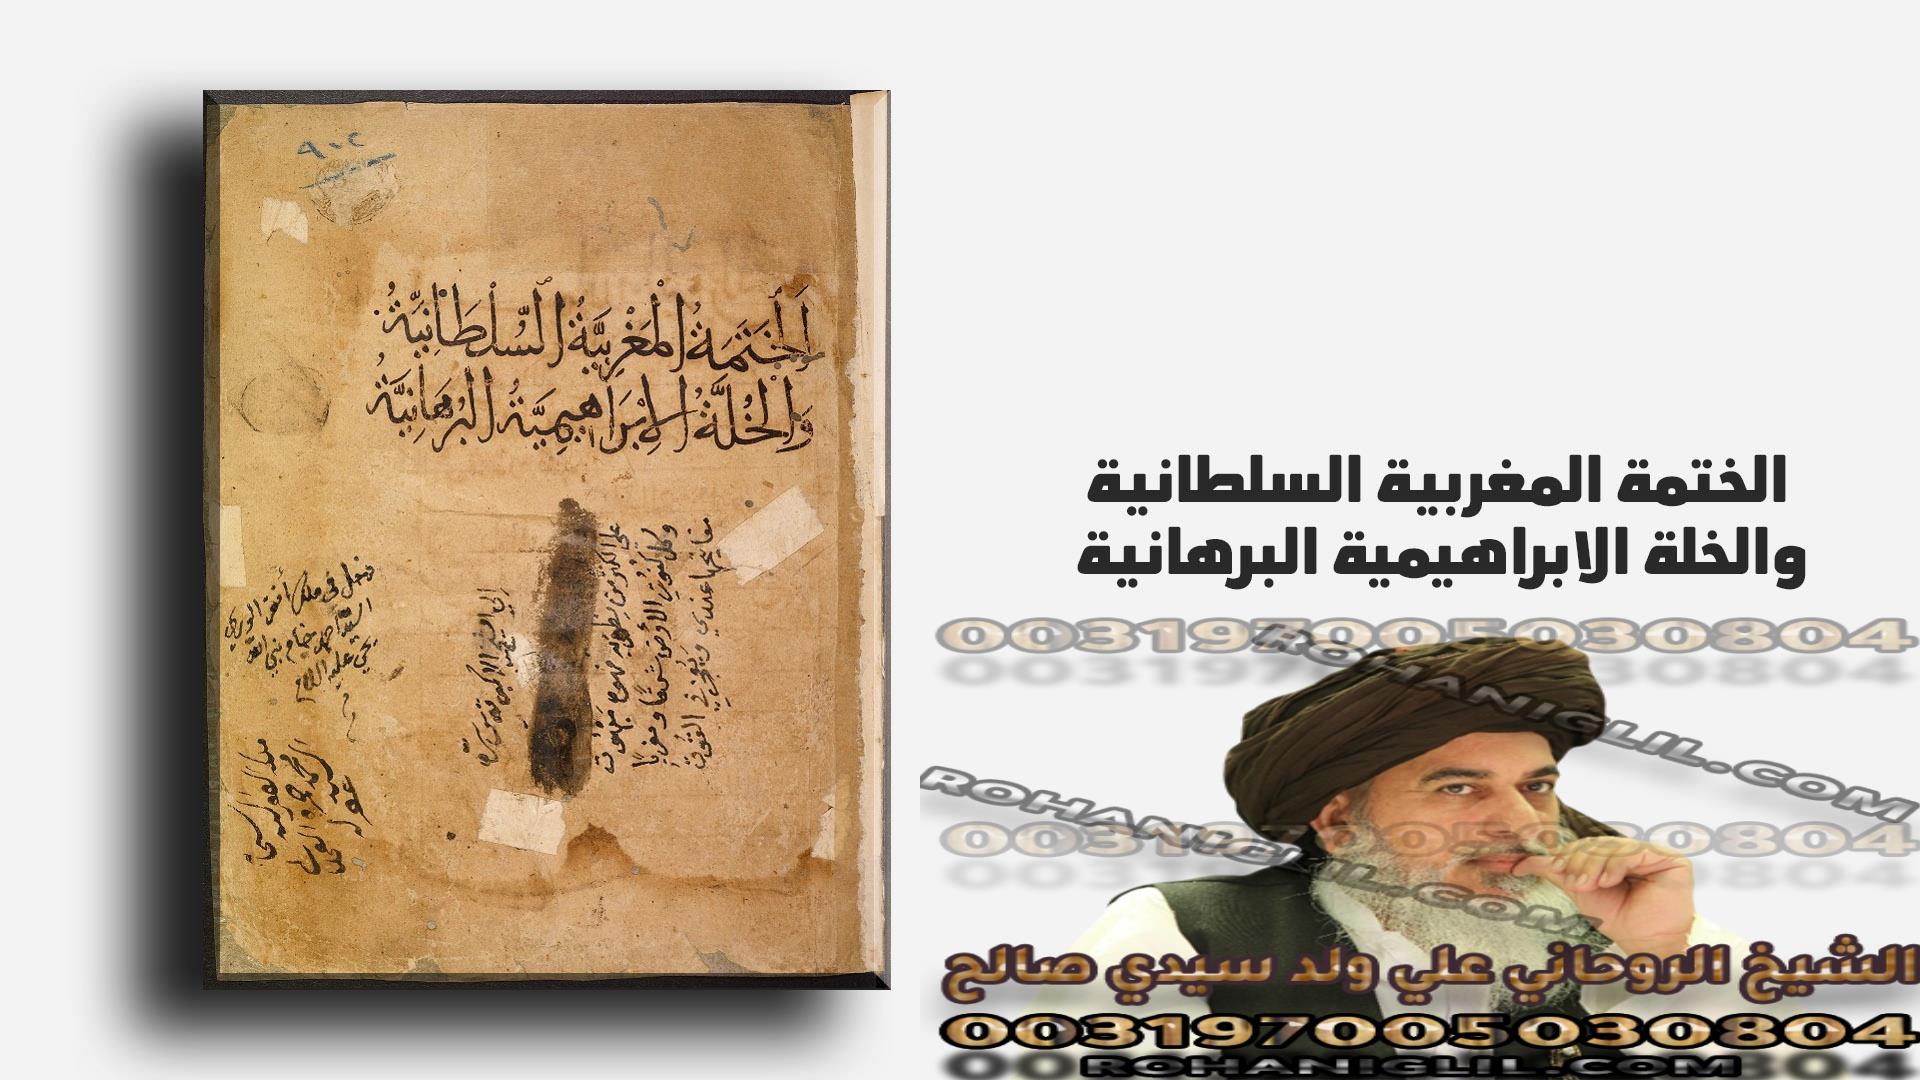 مخطوطة الختمة المغربية السلطانية والخلة الابراهيمية البرهانية